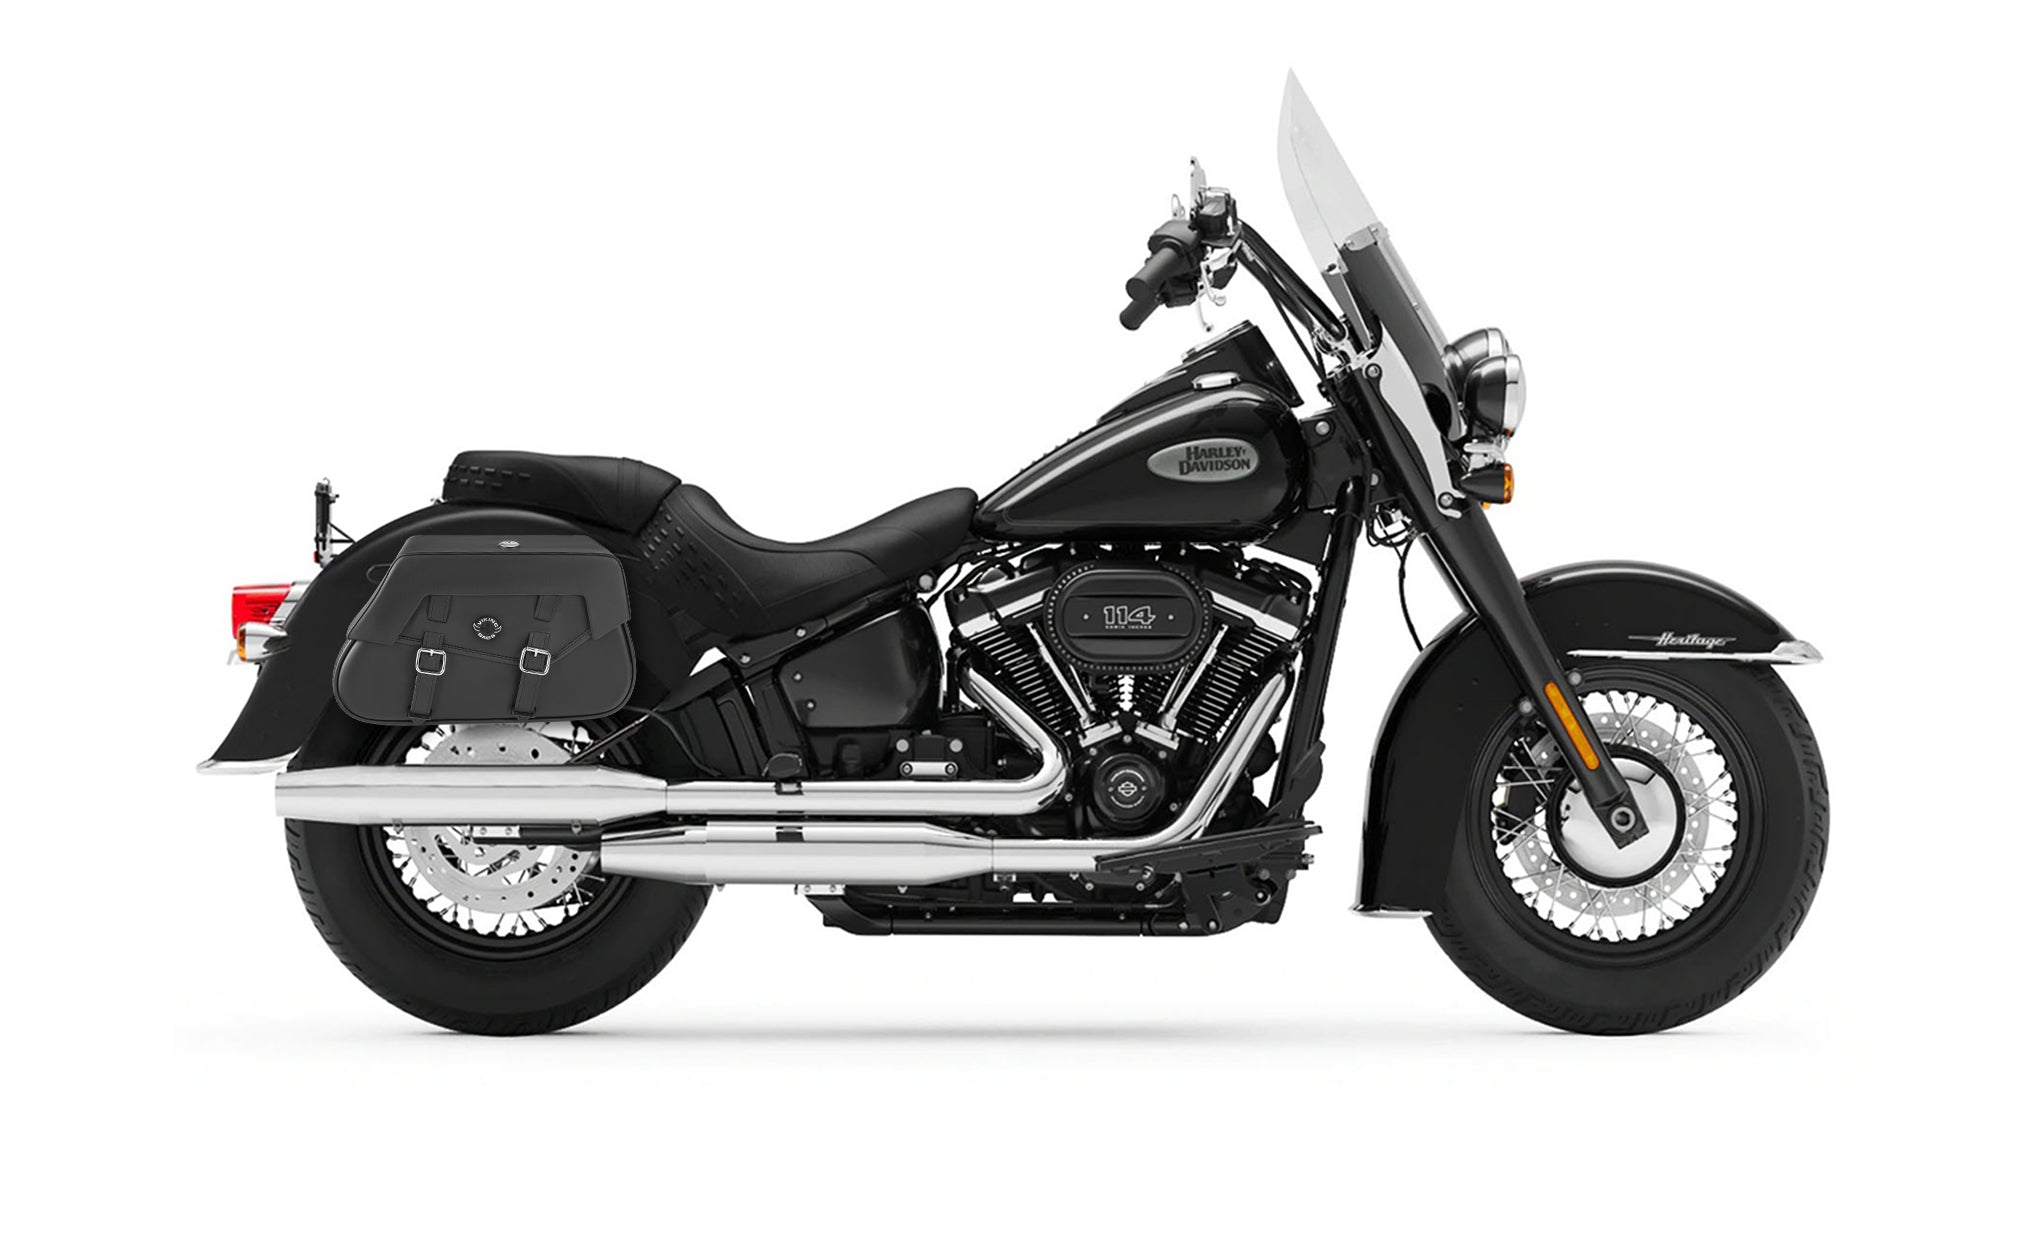 Viking Loki Classic Small Leather Motorcycle Saddlebags For Harley Softail Heritage Flst I C Ci on Bike Photo @expand